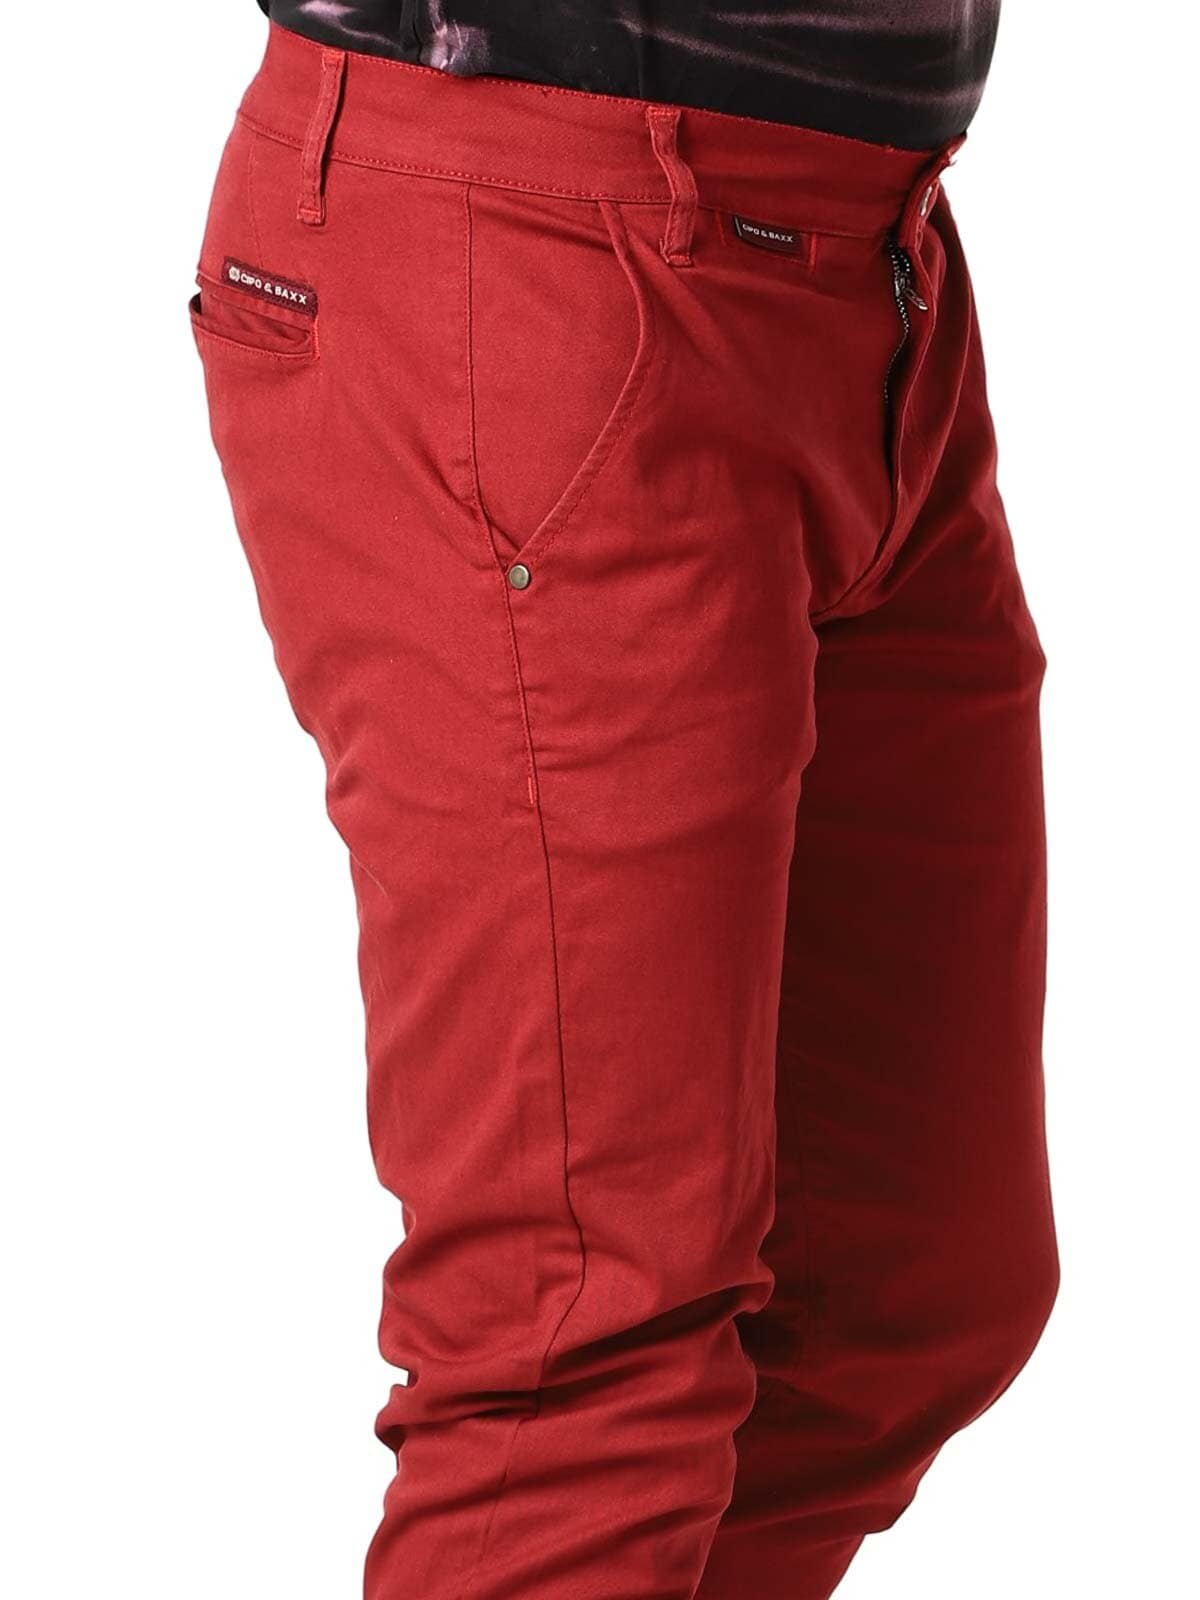 Spodnie Chinosy Huxley Cipo & Baxx - Czerwone